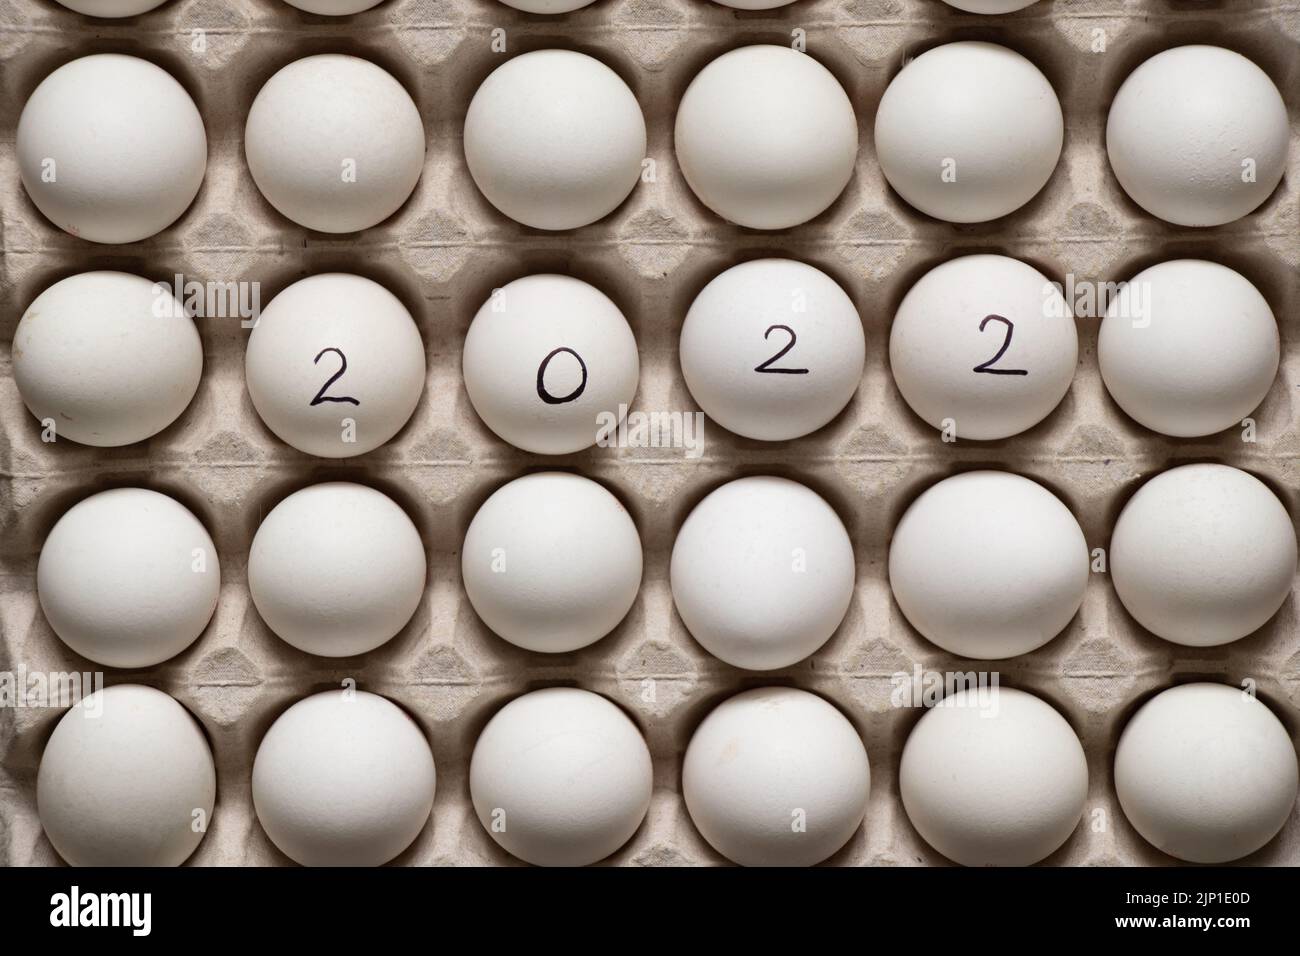 2022 steht auf weißen Hühnereiern in einem Papiertablett, das Jahr 2022 steht auf Eiern Stockfoto